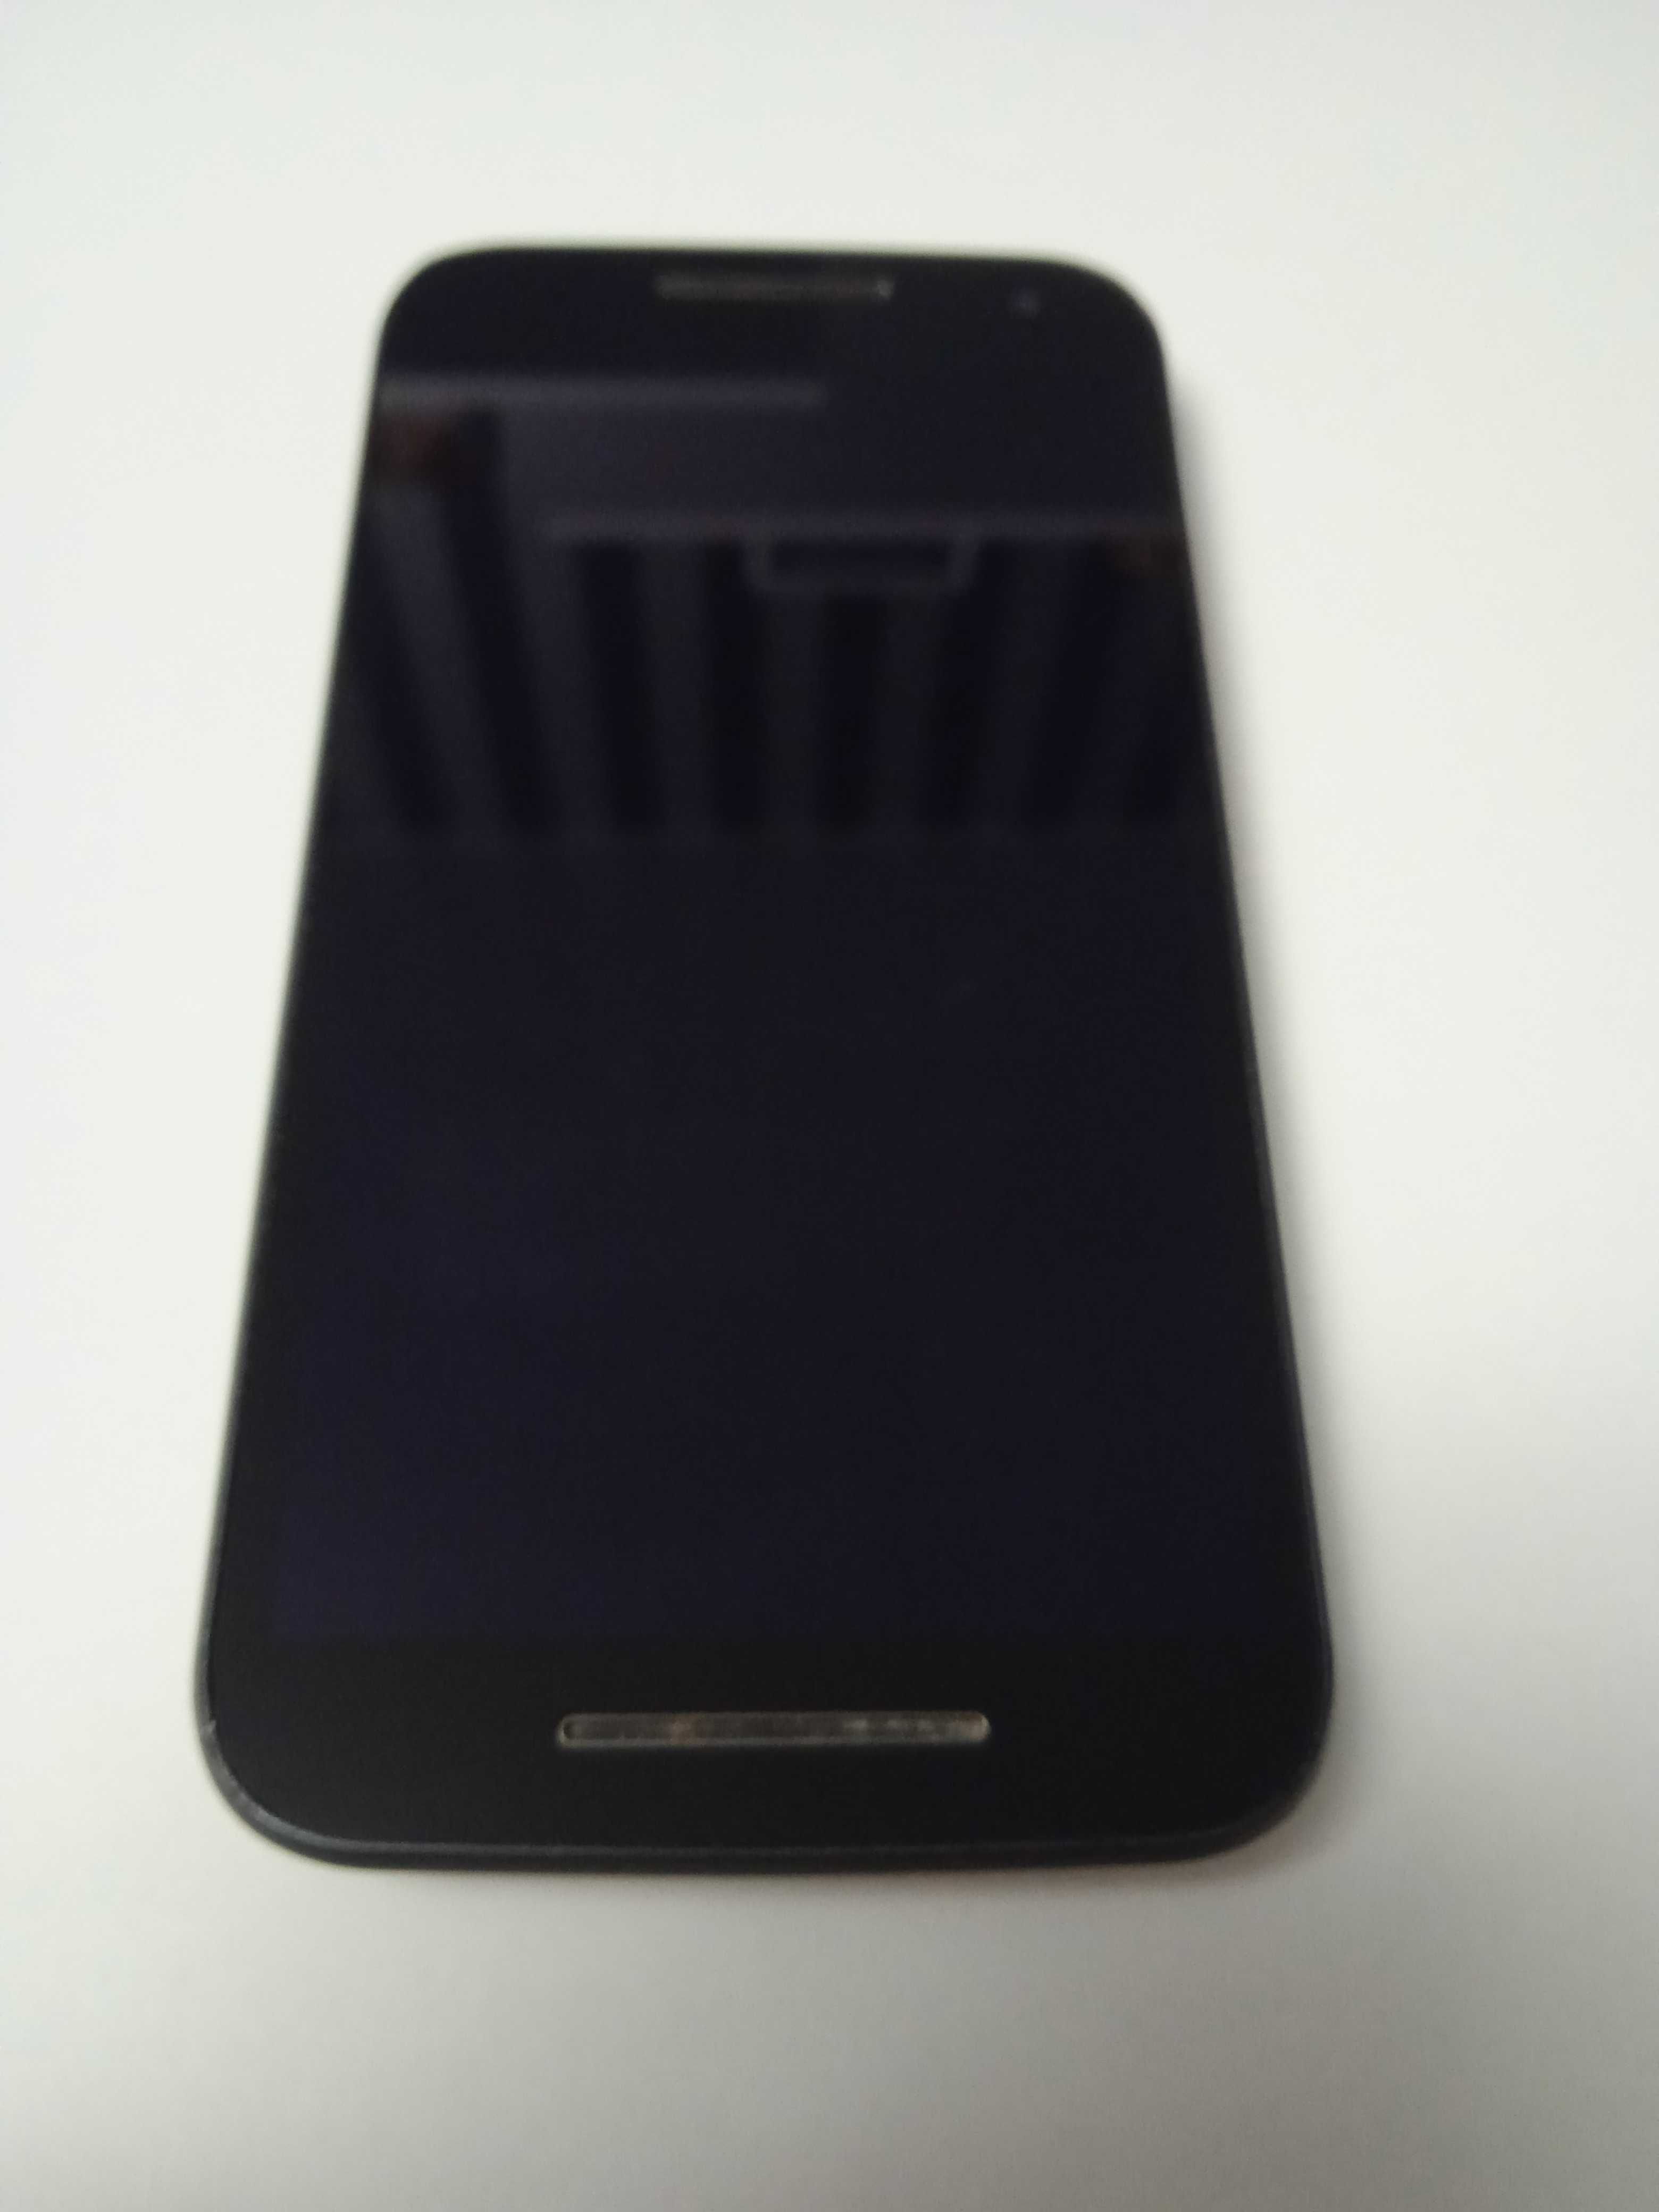 Смартфон, андройд, мобильный телефон Motorola Moto G3 XT1550 16GB